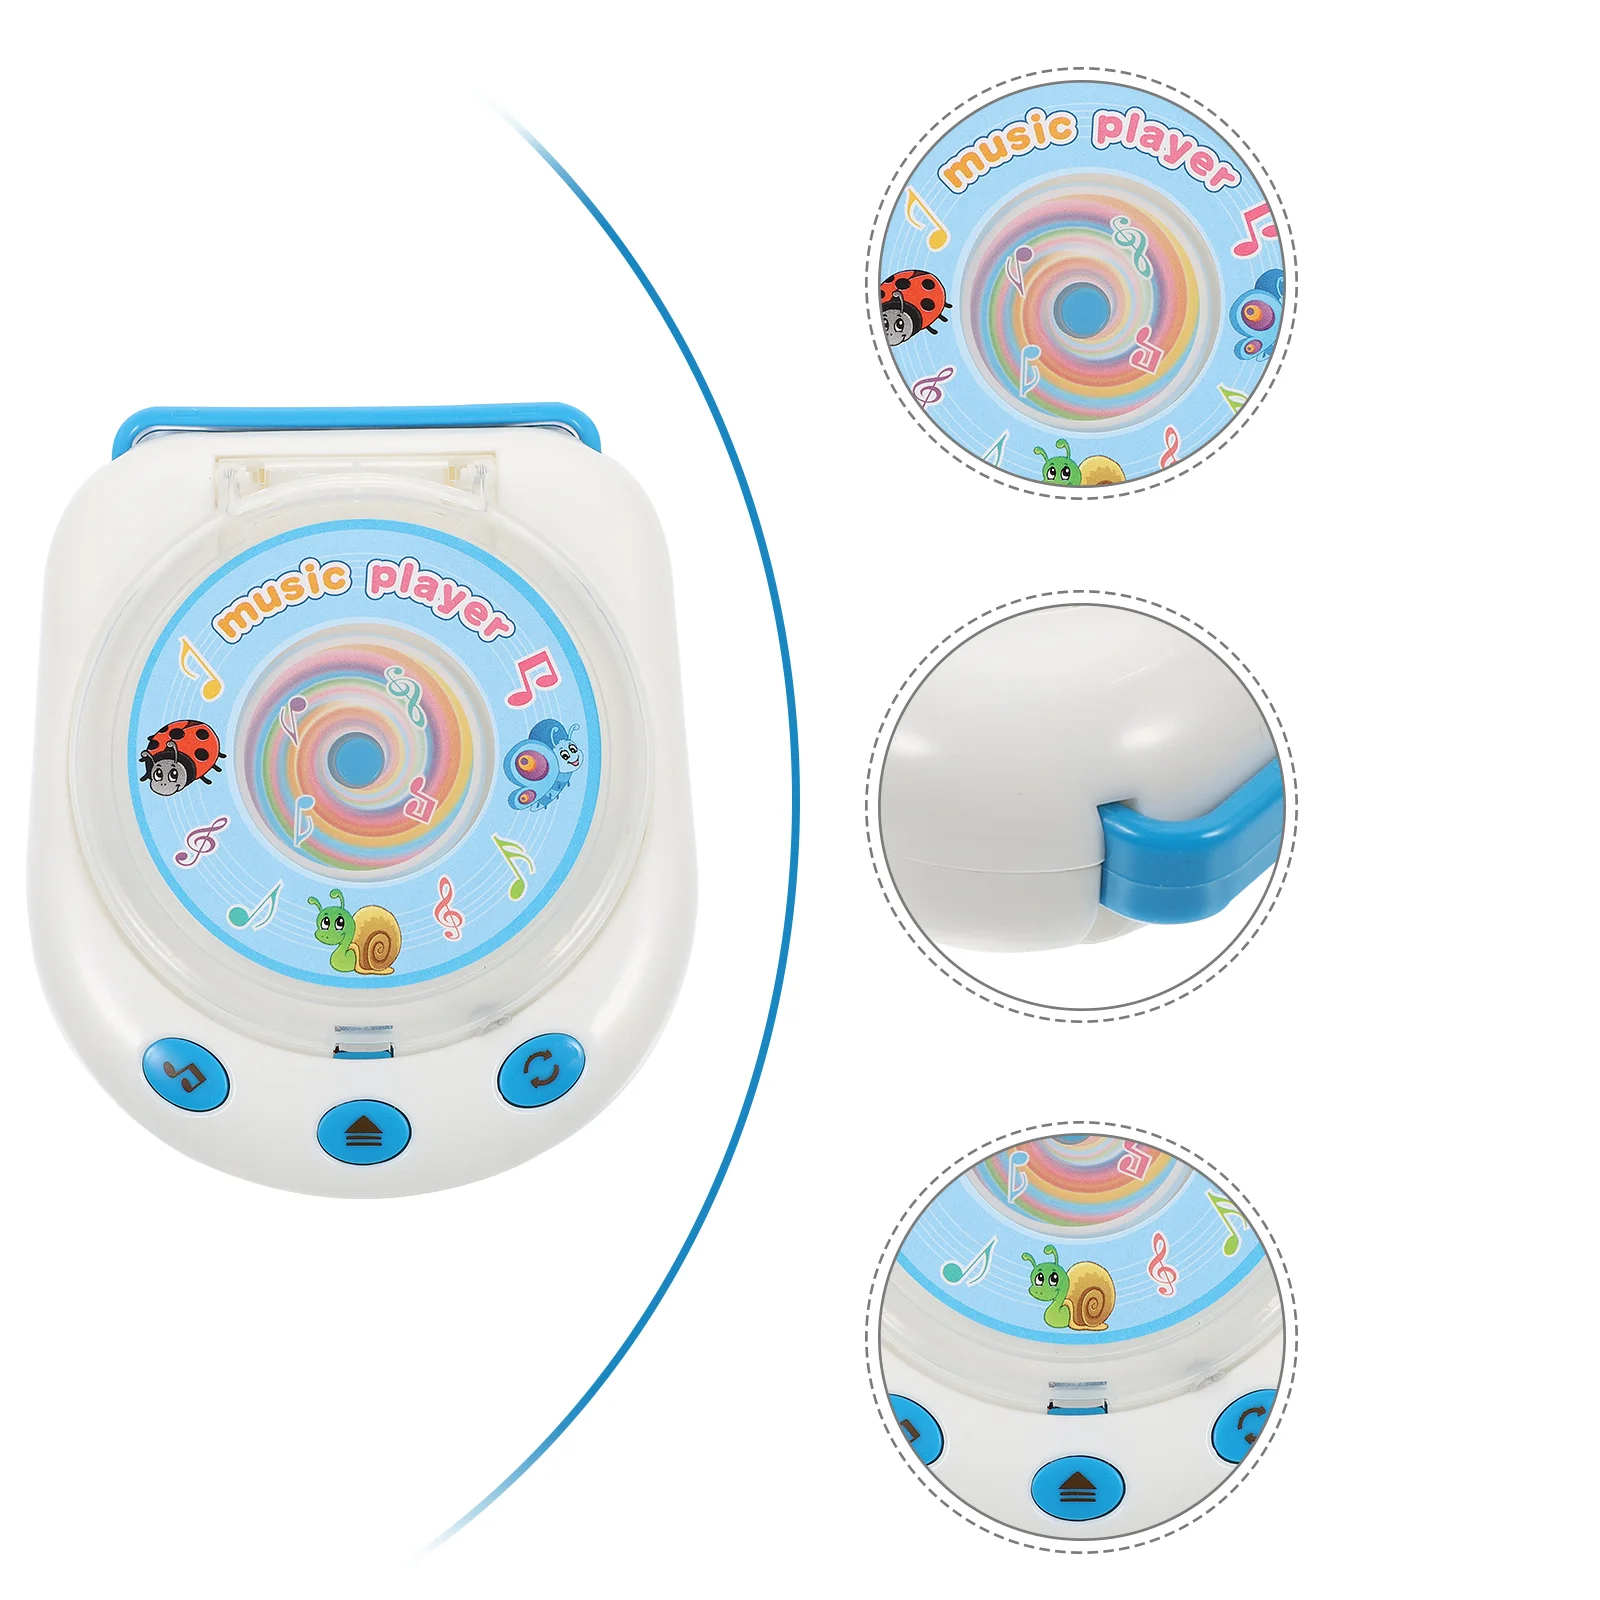 

Эмуляция CD домашняя игрушка прибор Обучающие игрушки детские ролевые игры пластиковая восхитительная симуляция Детский пазл